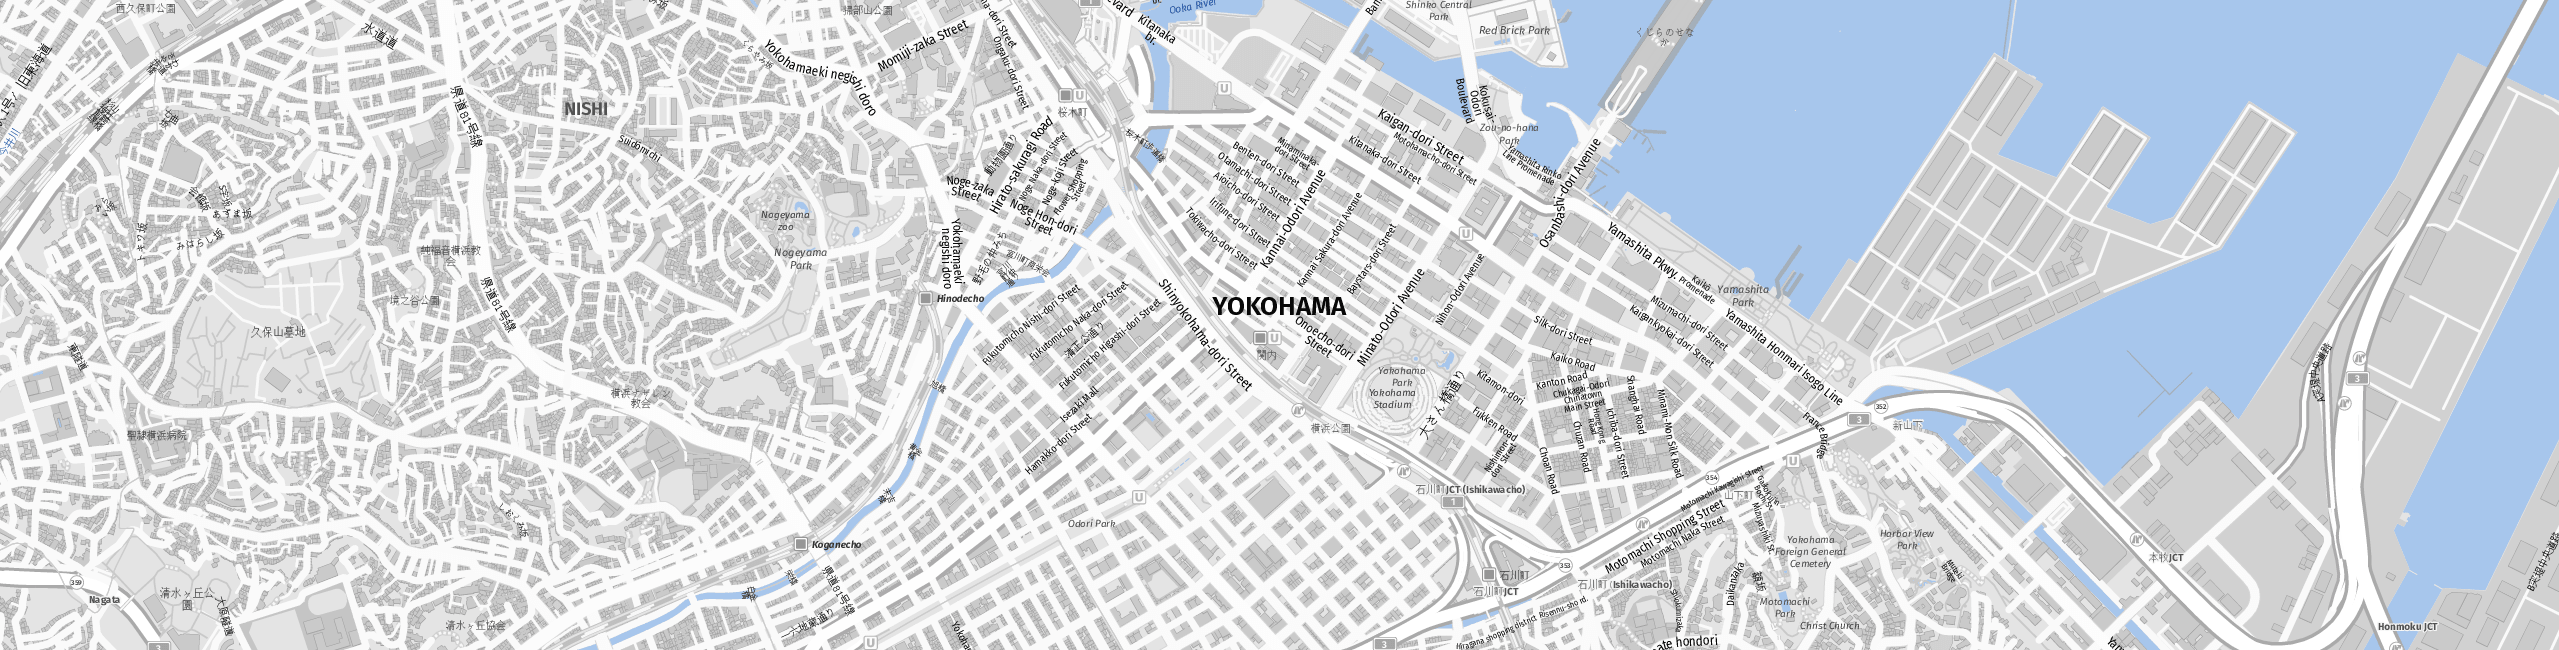 Stadtplan Yokohama zum Downloaden.